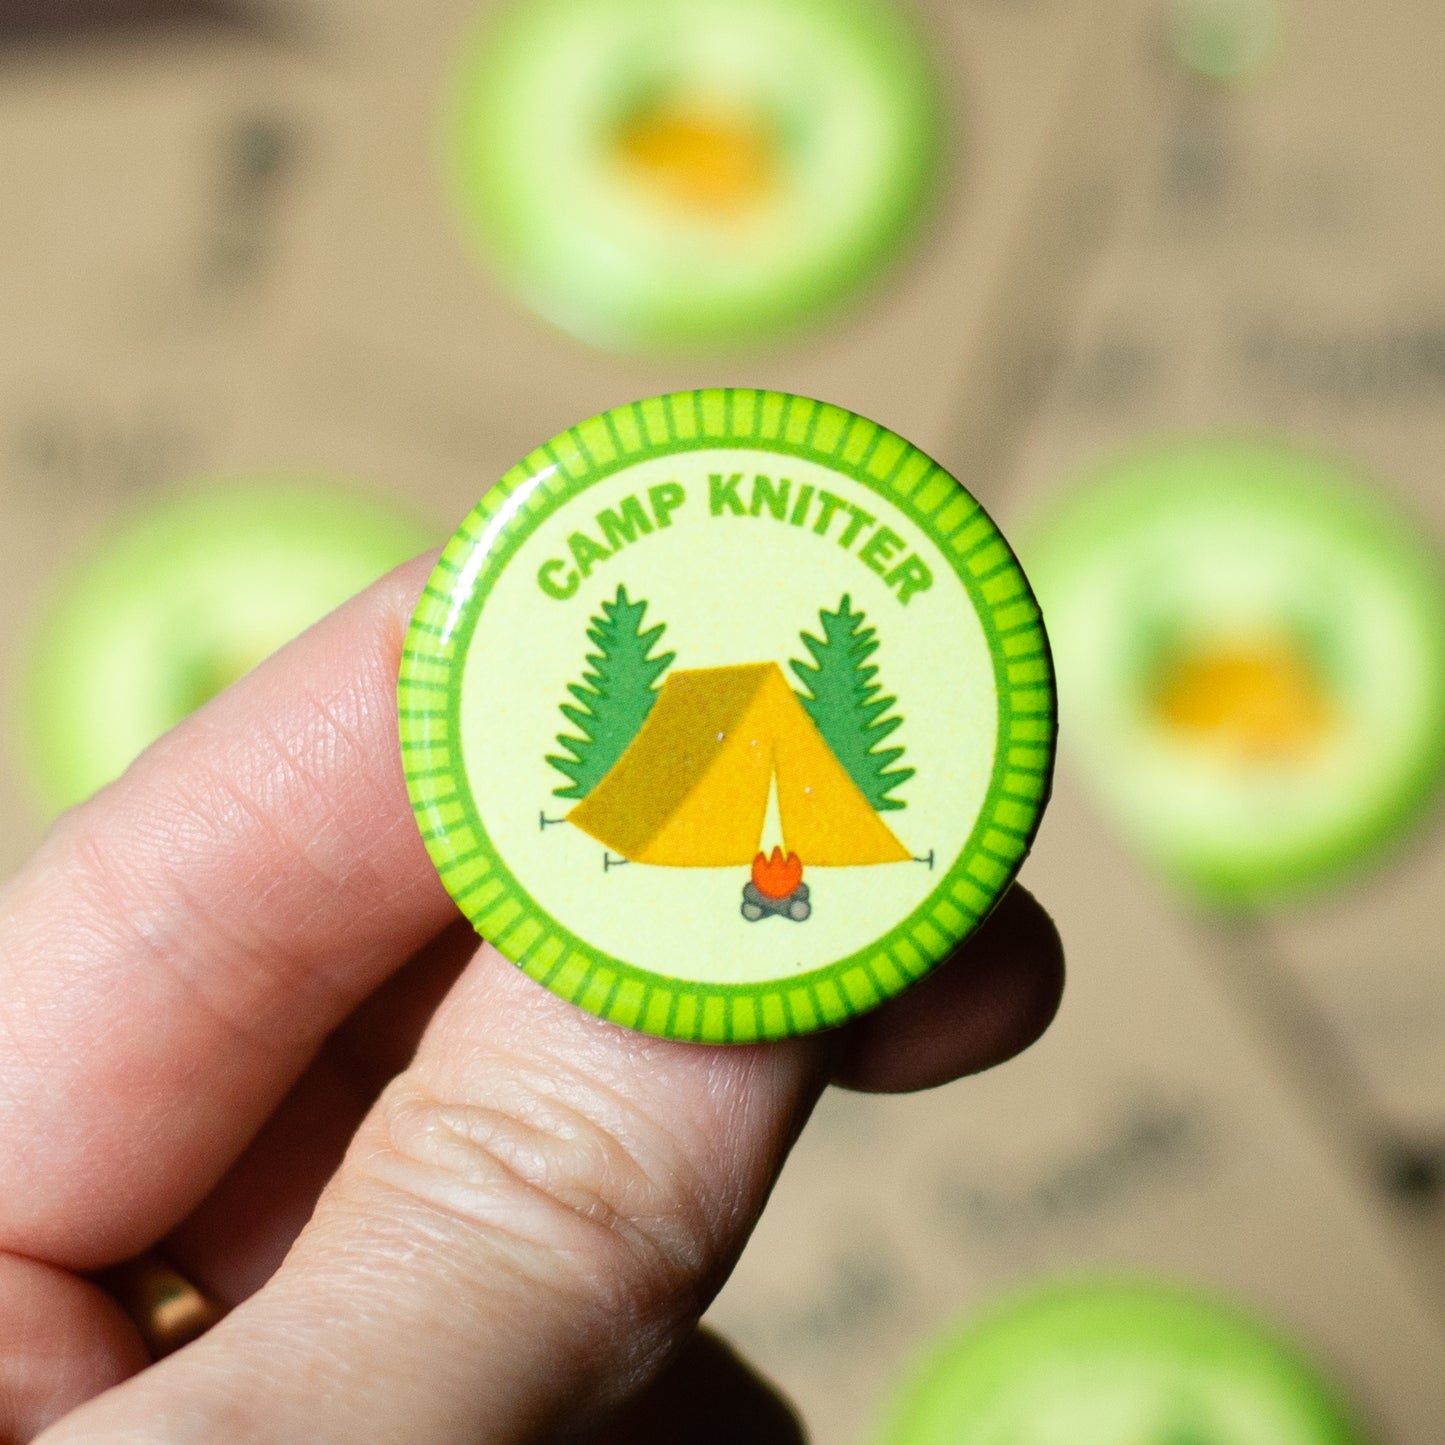 camp knitter  pin, knitting pin-back merit badge by adKnits